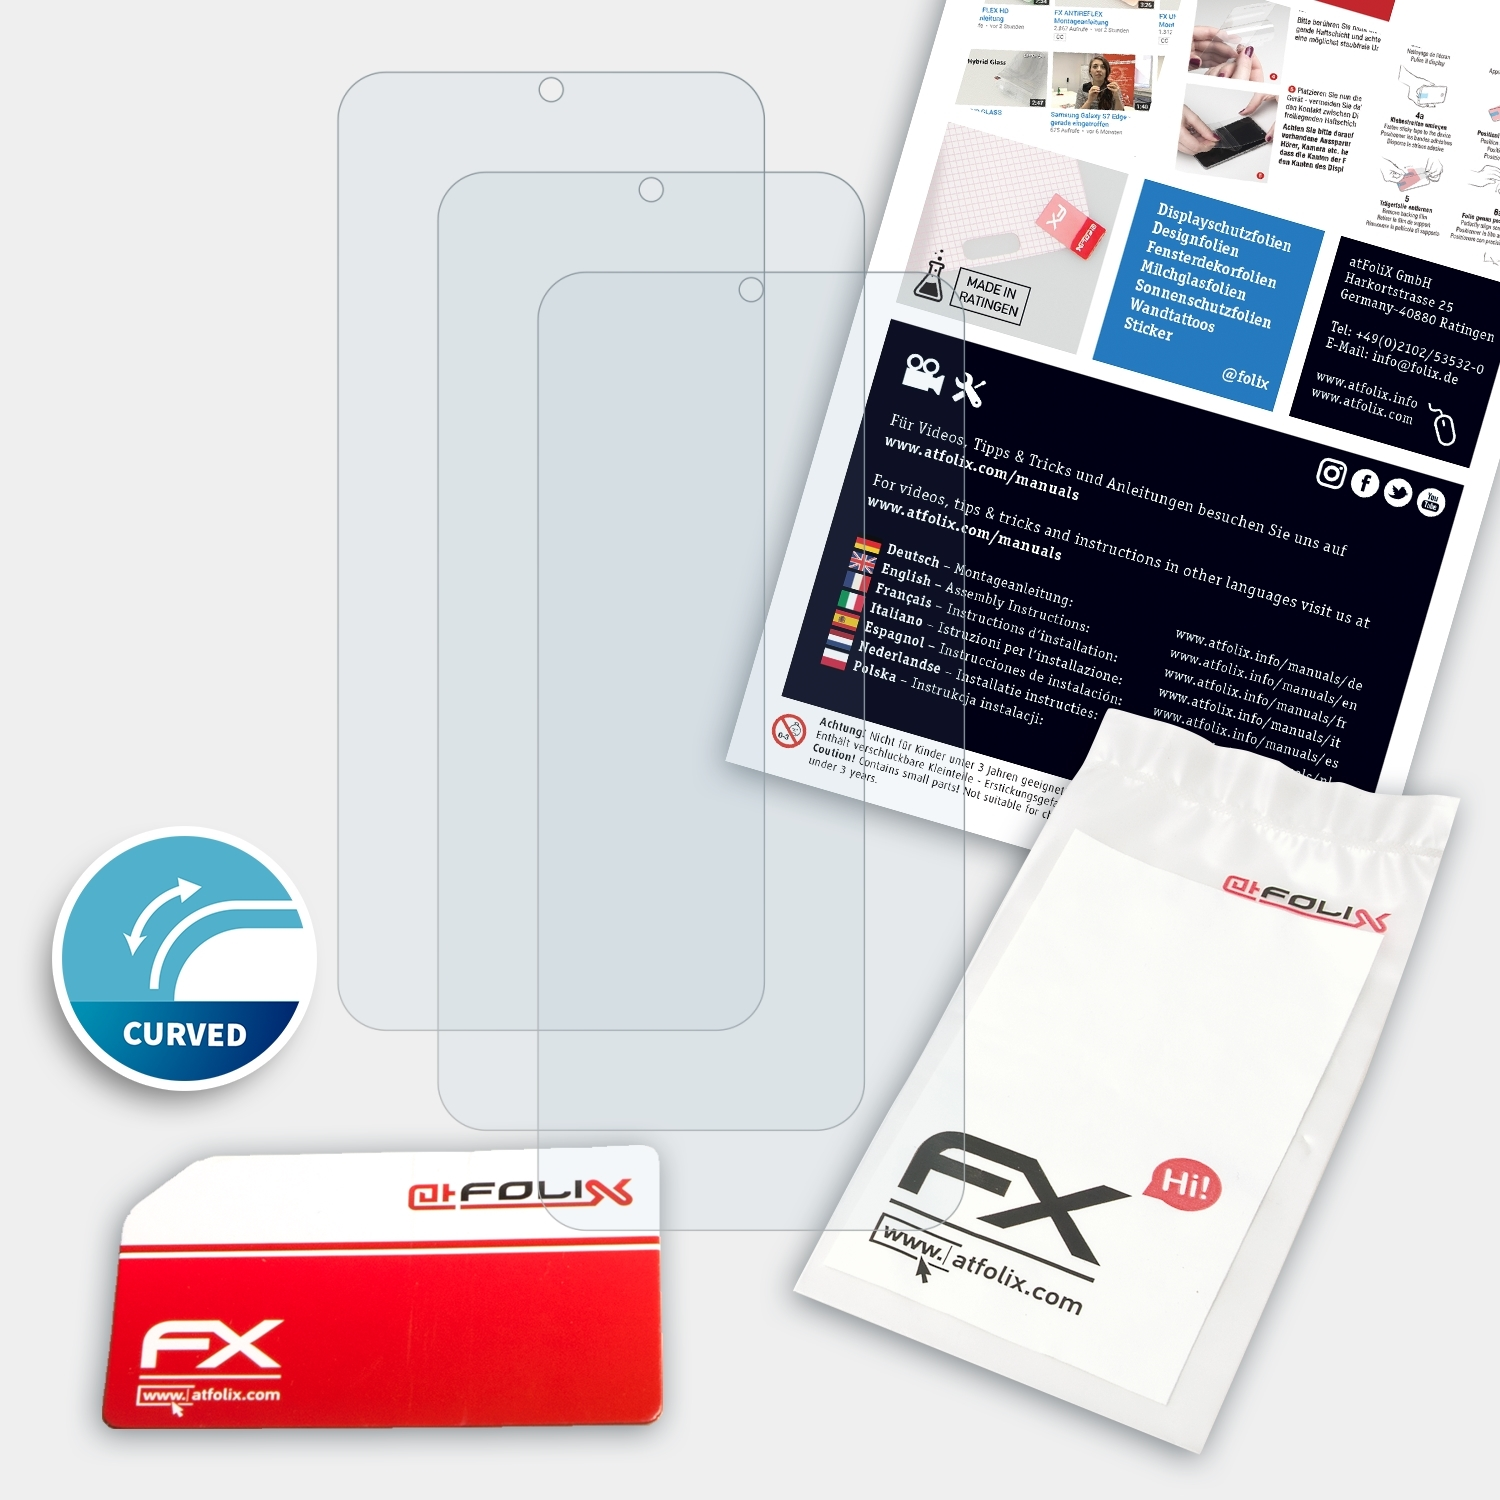 FX-ActiFleX (2021)) Displayschutz(für 3x ATFOLIX Vivo Y21